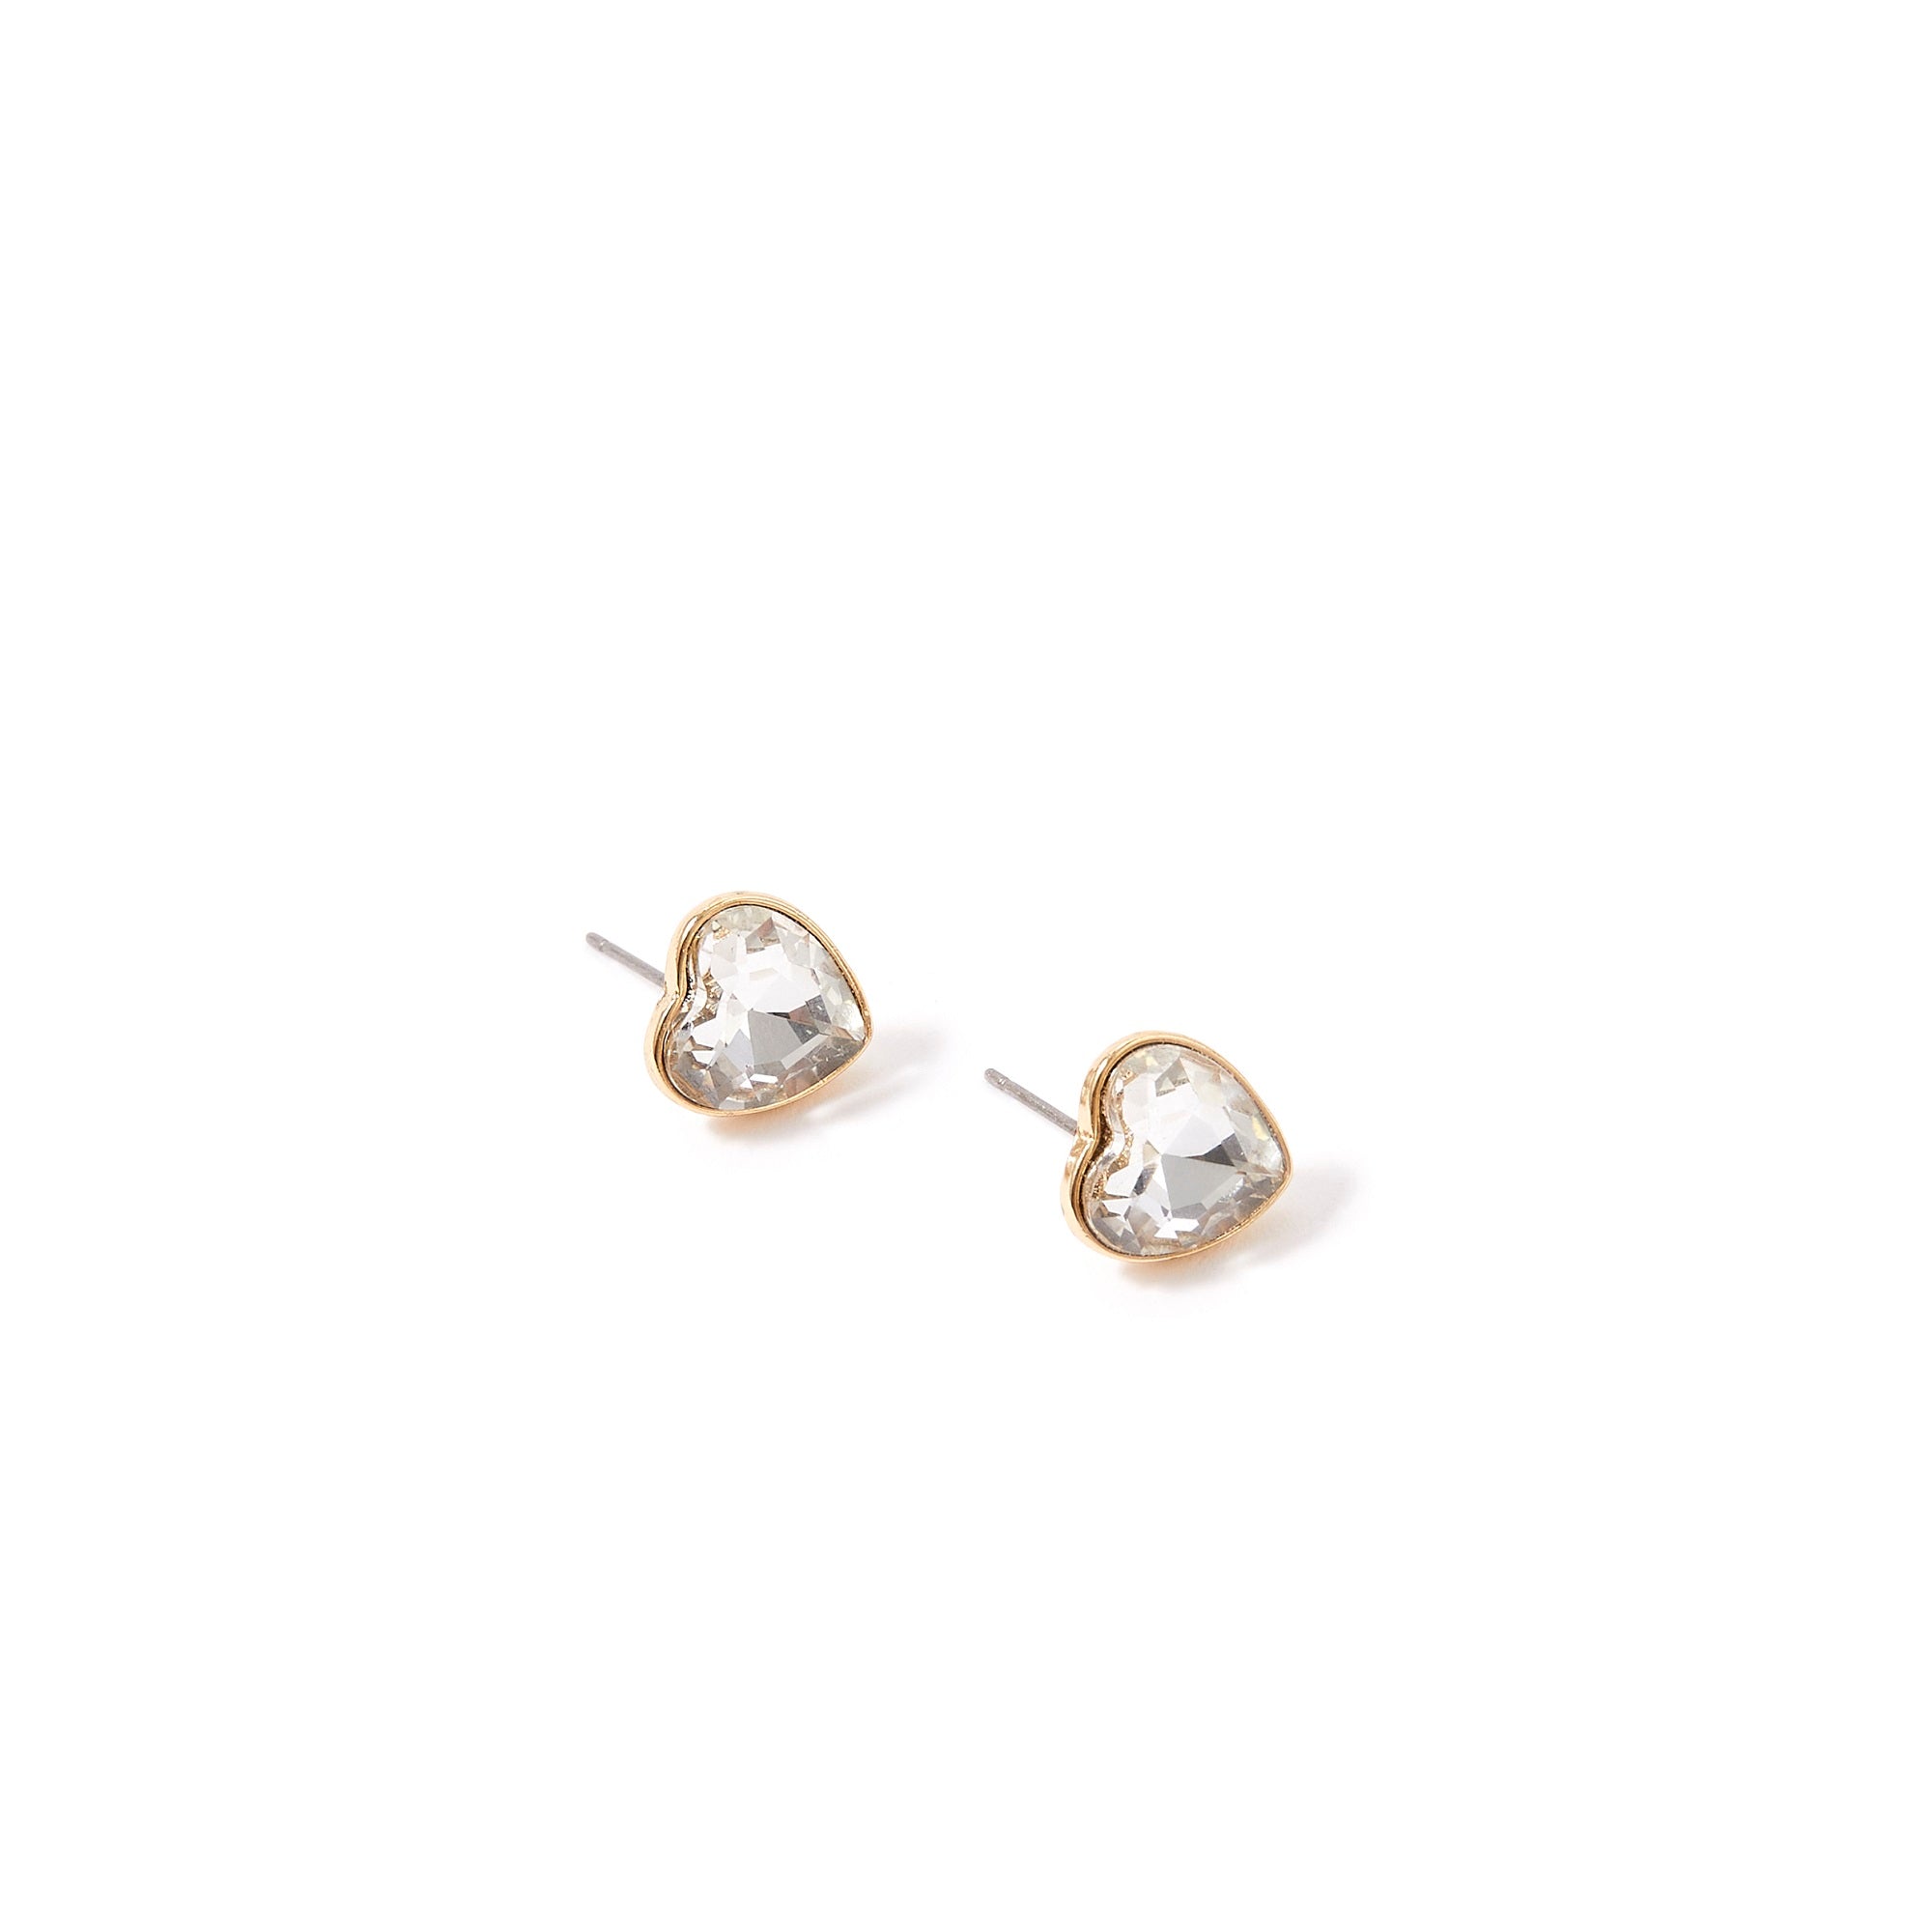 Accessorize London Women's Silver Pastel Pop Heart Crystal Stud earring